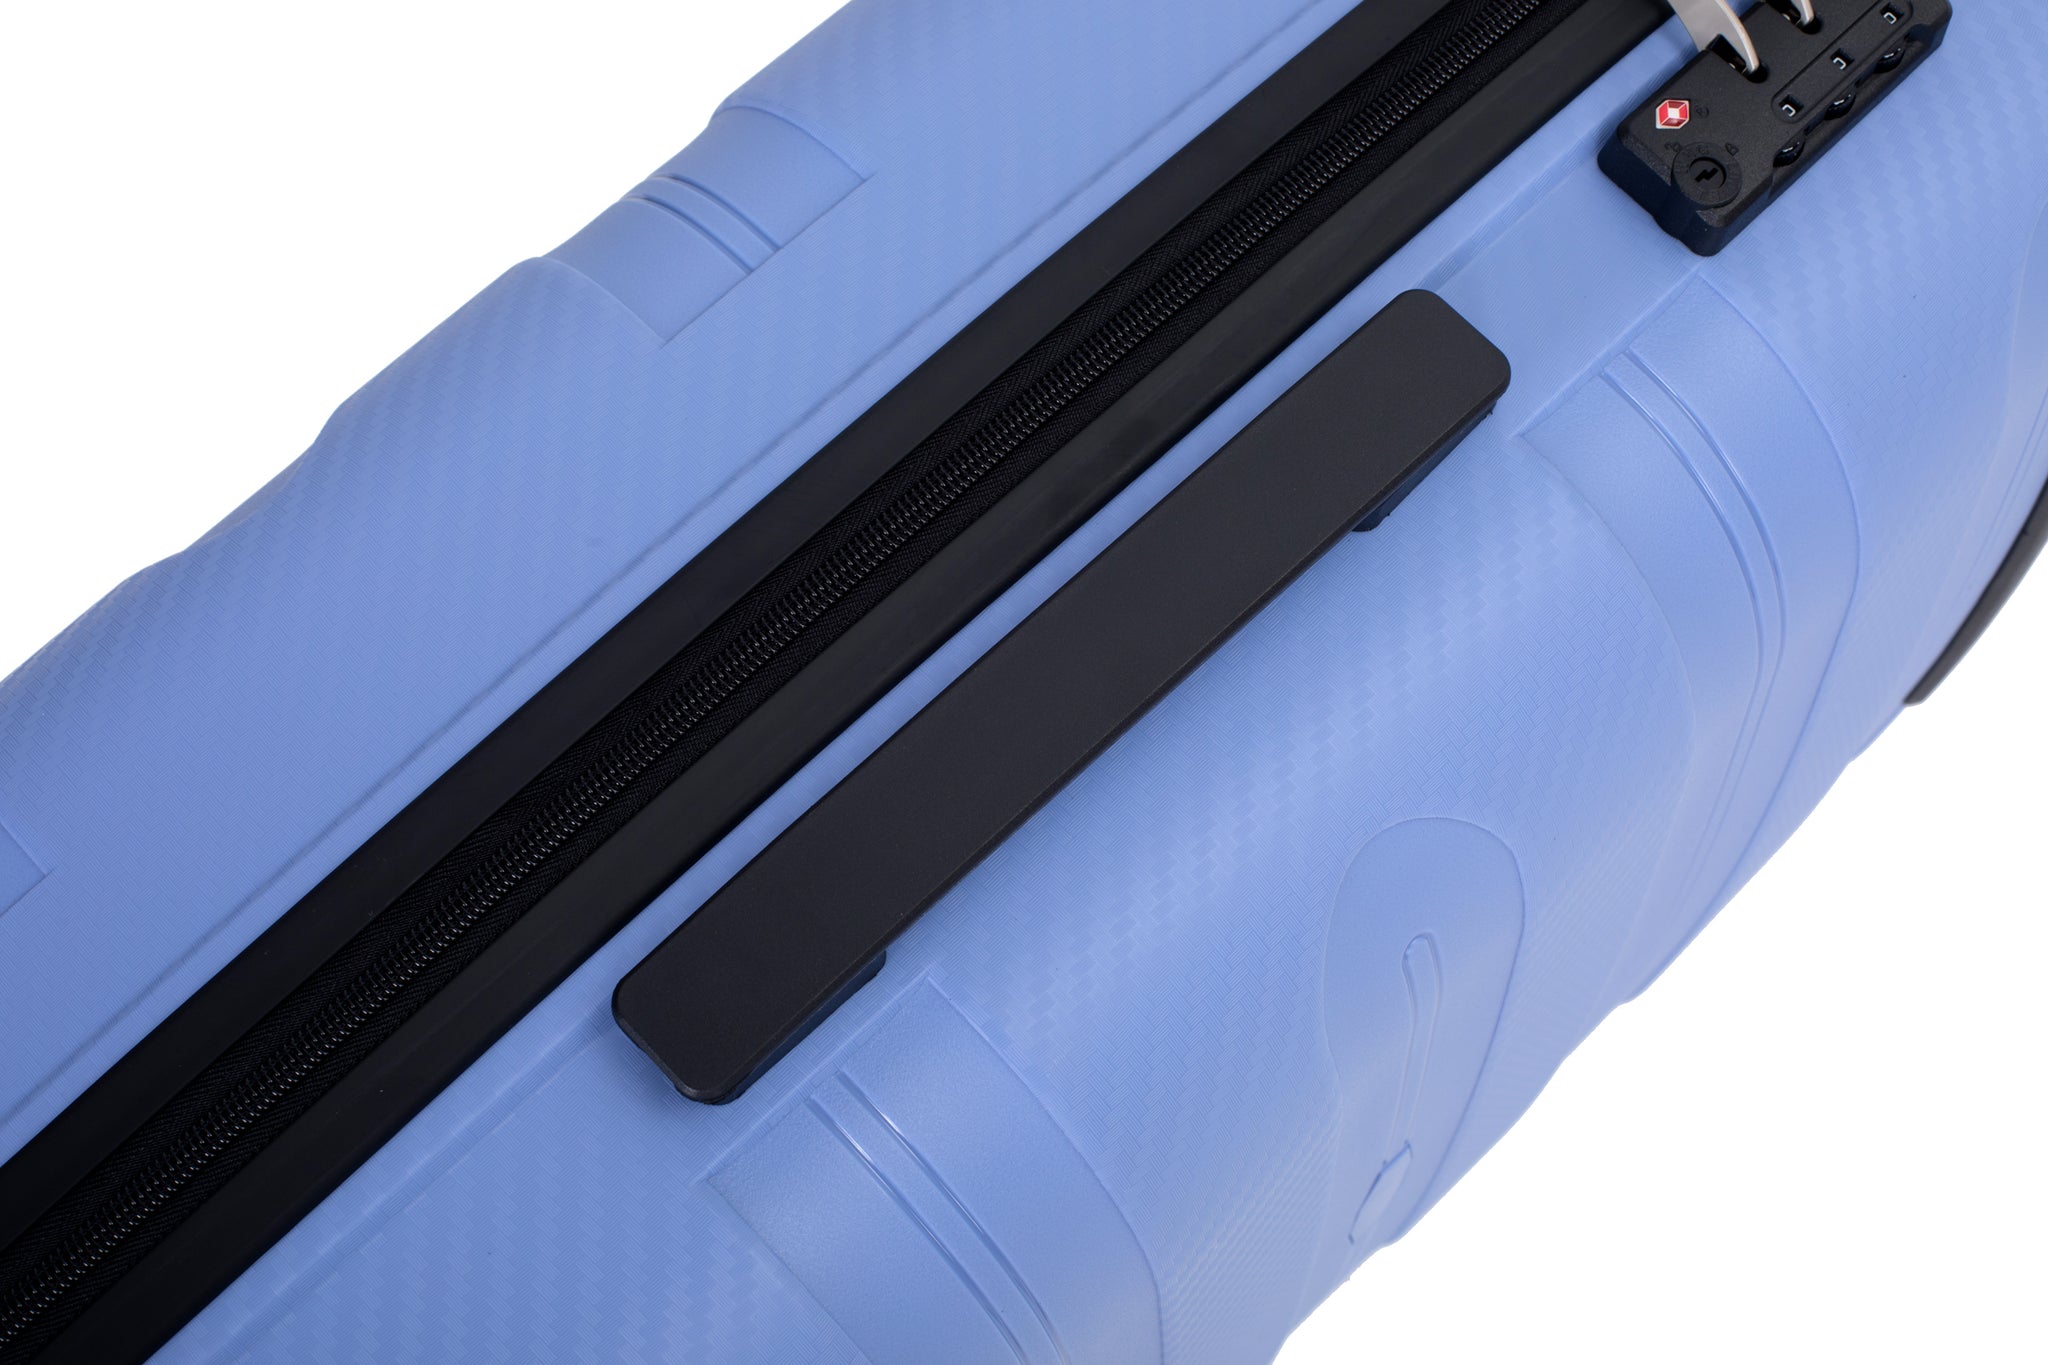 Hardshell Suitcase Spinner Wheels PP Luggage Sets purplish blue-polypropylene